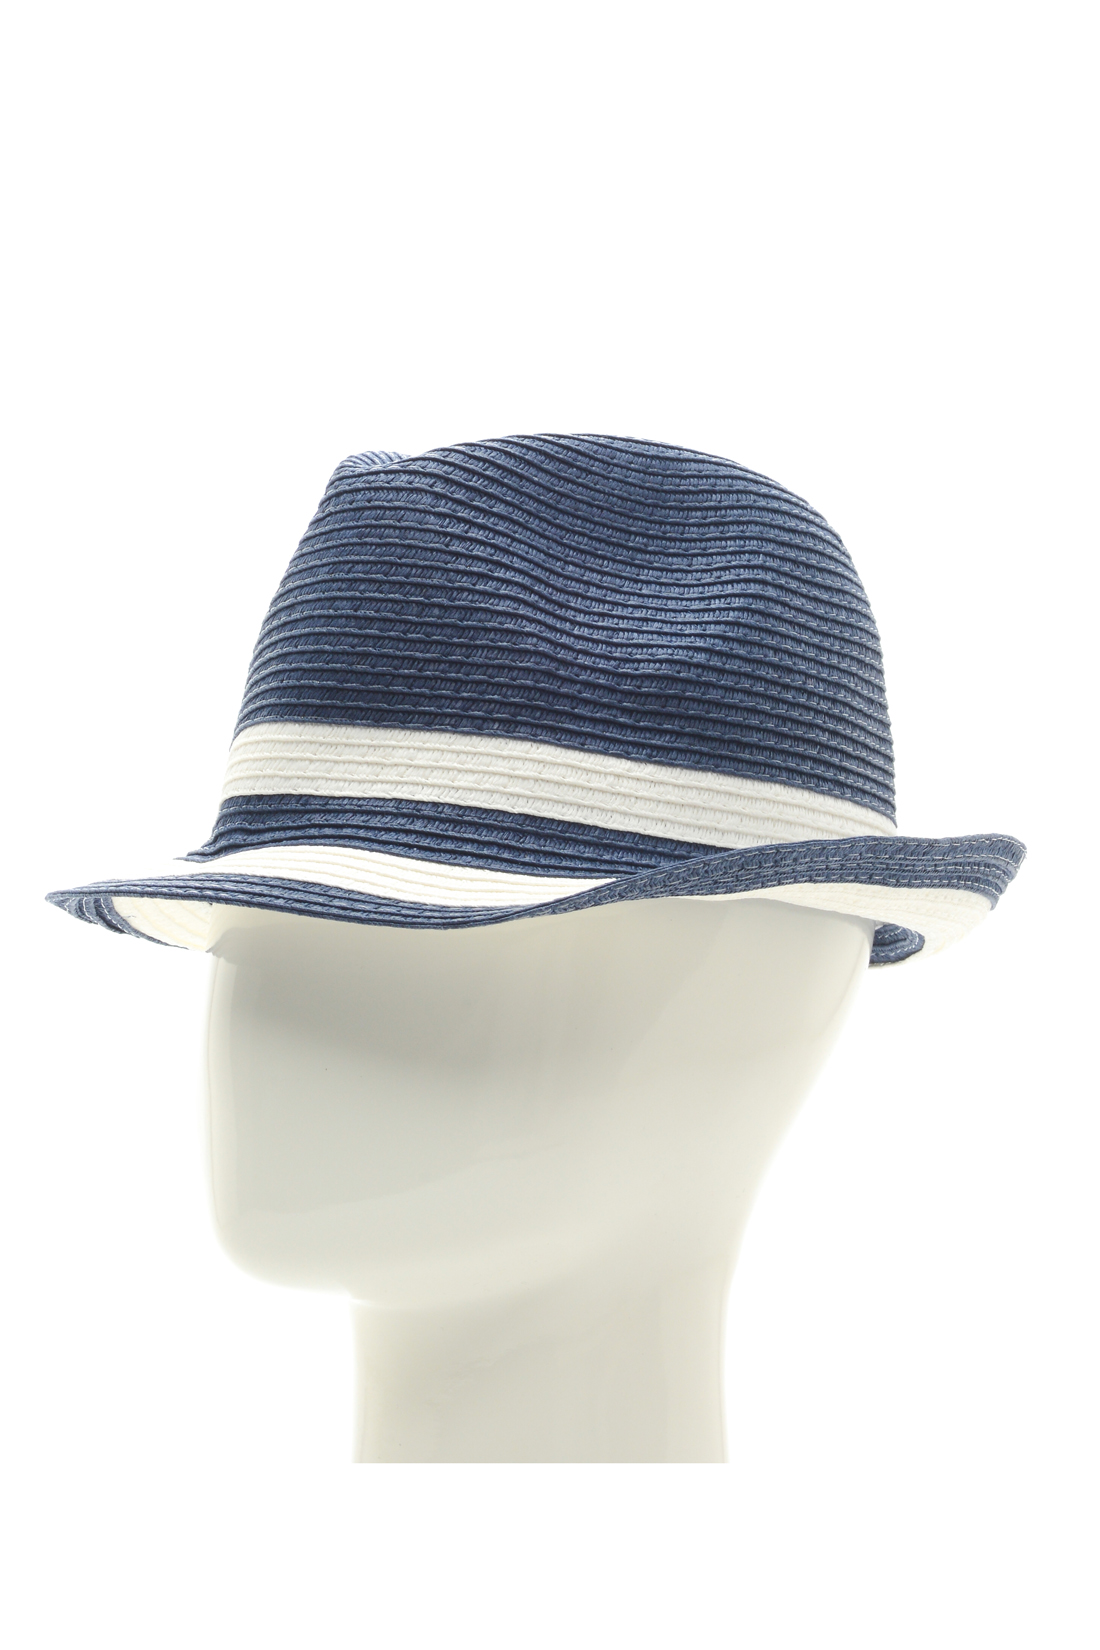 Шляпа в морском стиле (арт. baon B348003), размер Б/р 56, цвет синий Шляпа в морском стиле (арт. baon B348003) - фото 1